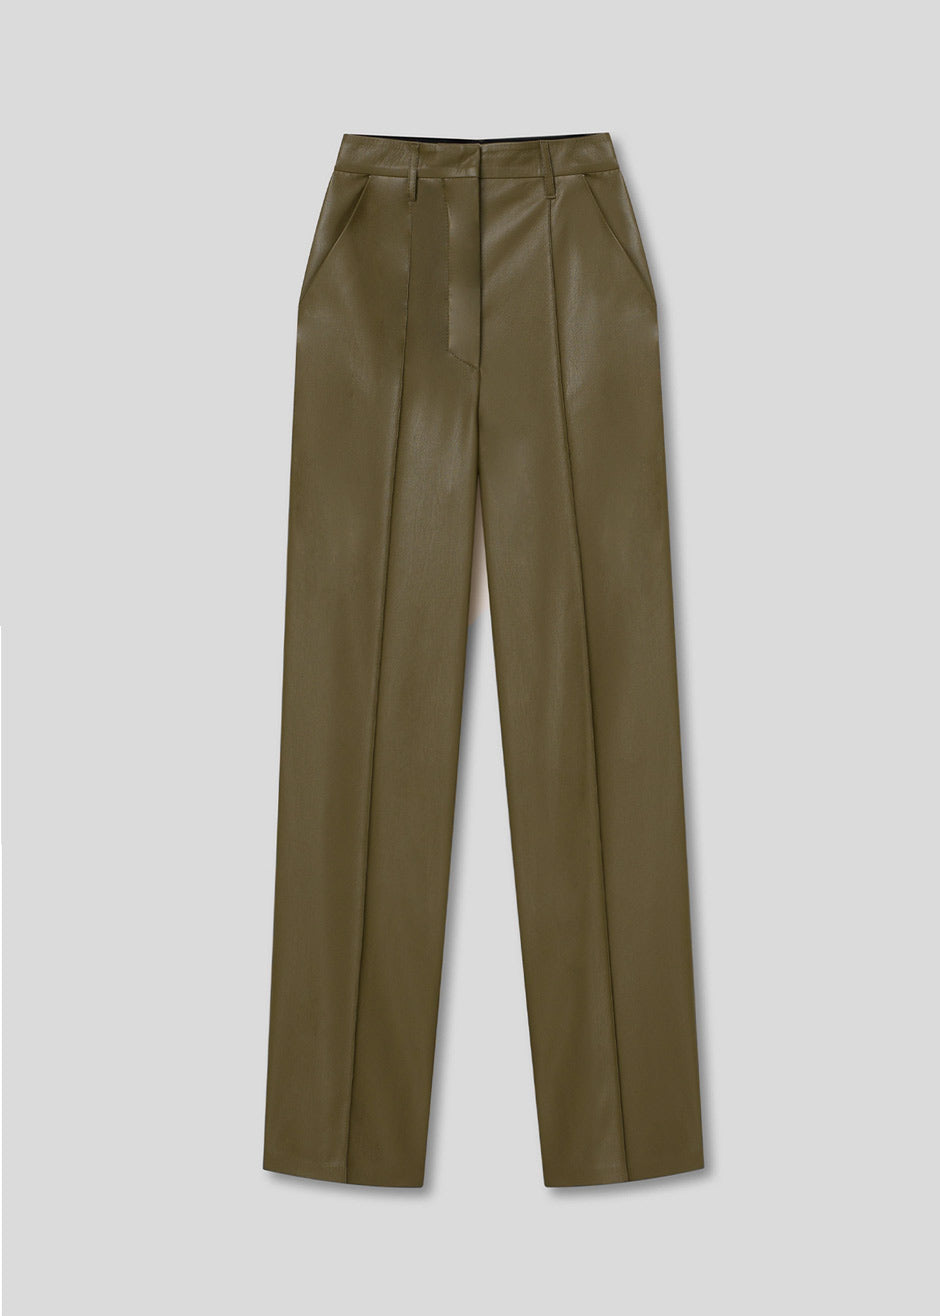 Nanushka Lucee Vegan Leather Pants - Olive - 9